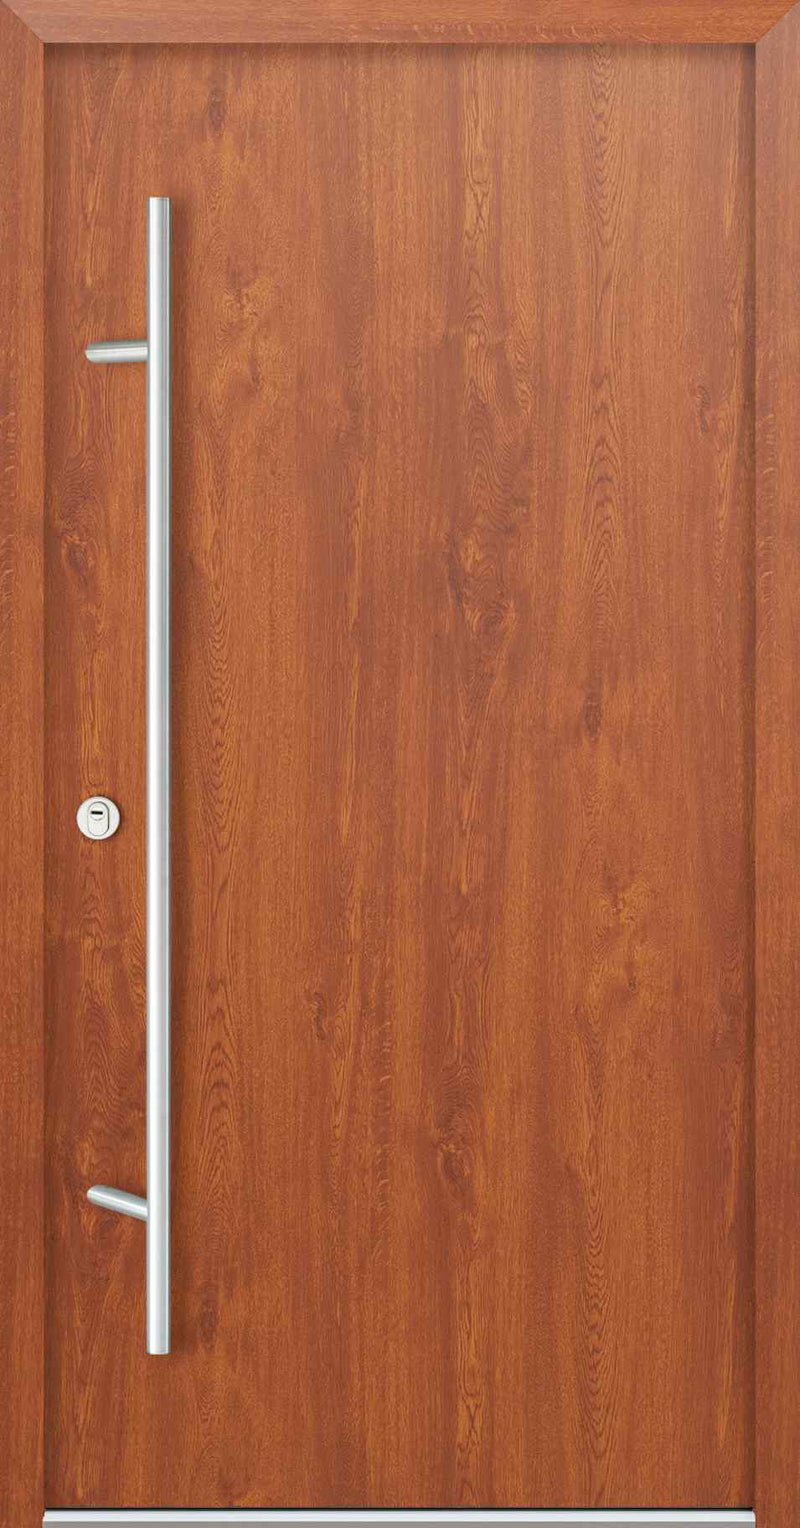 Turenwerke AC68 Design 00 Steel Door - Golden Oak